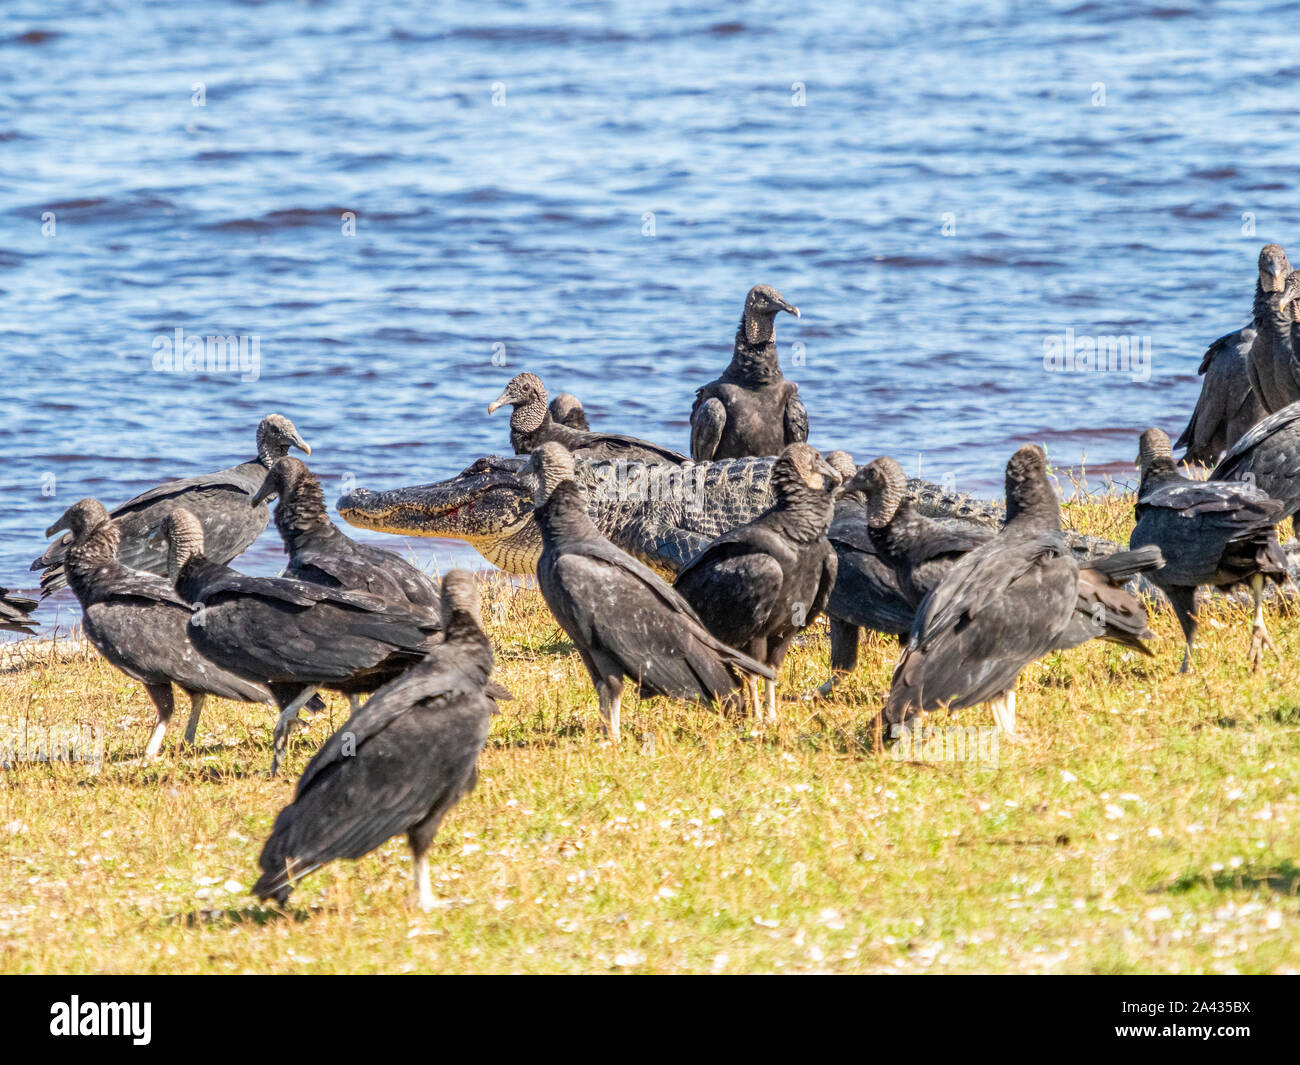 Les vautours noirs (Coragyps atratus) à la suite d'un alligator sur le bord de haute Myakka Lac dans Myakka River State Park à Sarasota Flo Banque D'Images